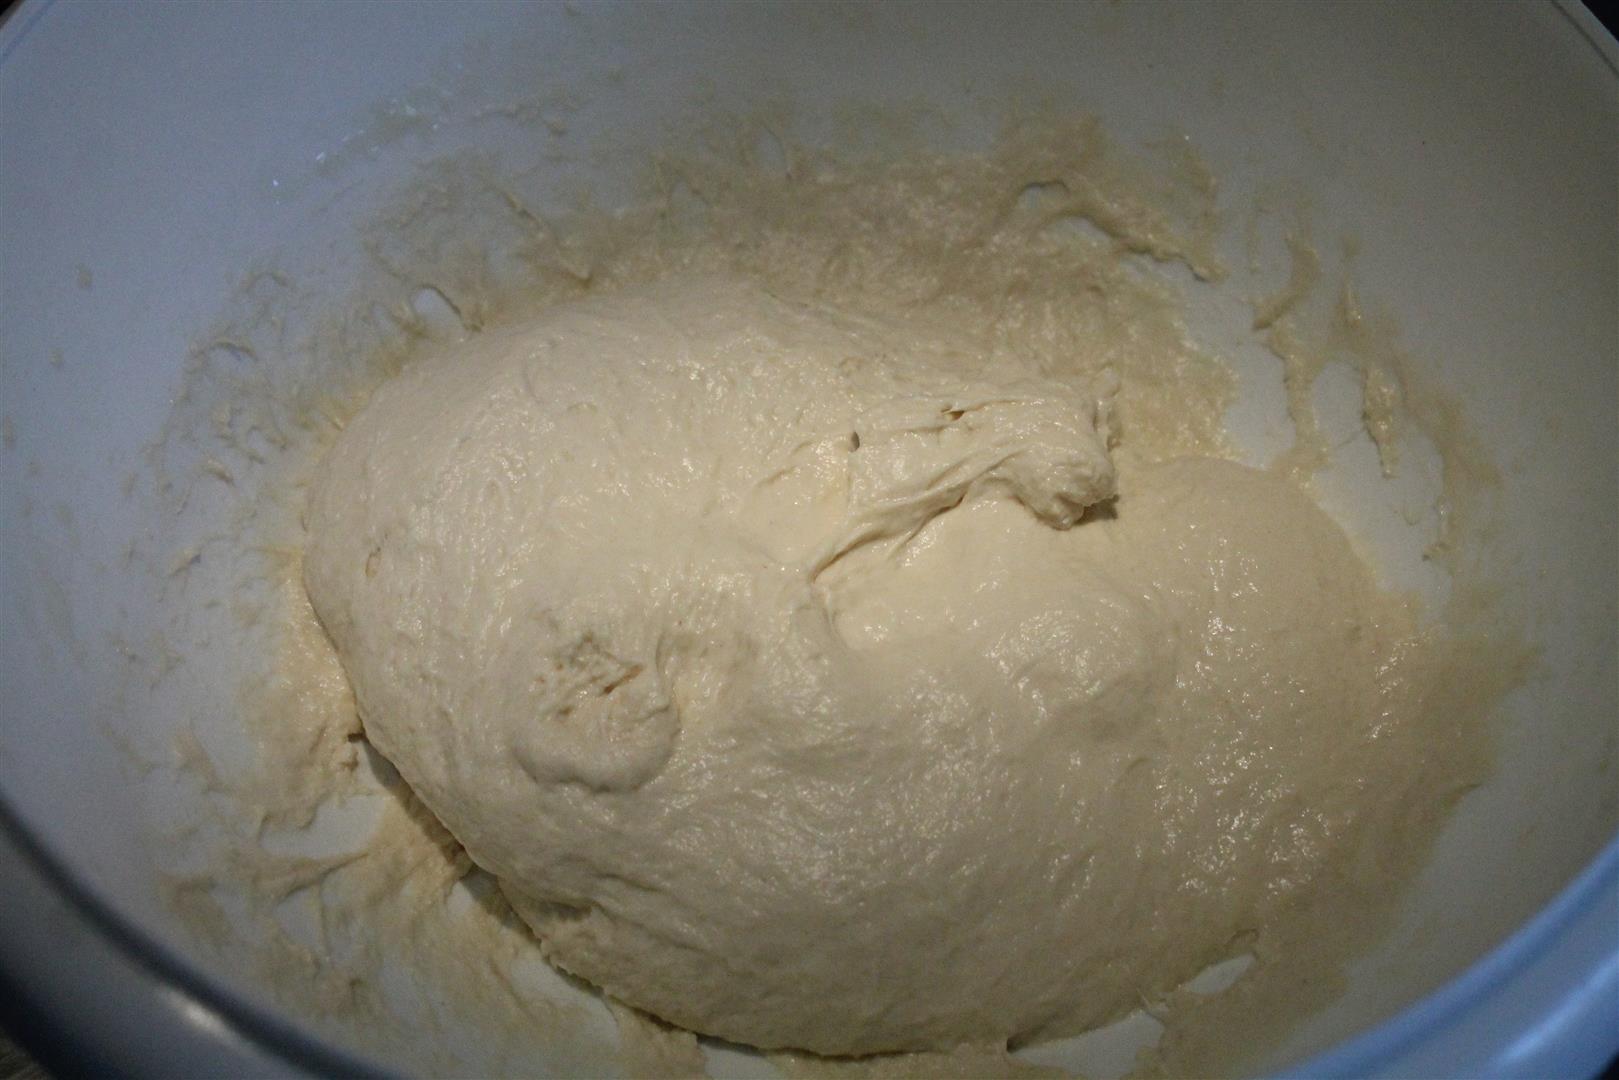 piaci lángos recept 1 kg lisztből 24